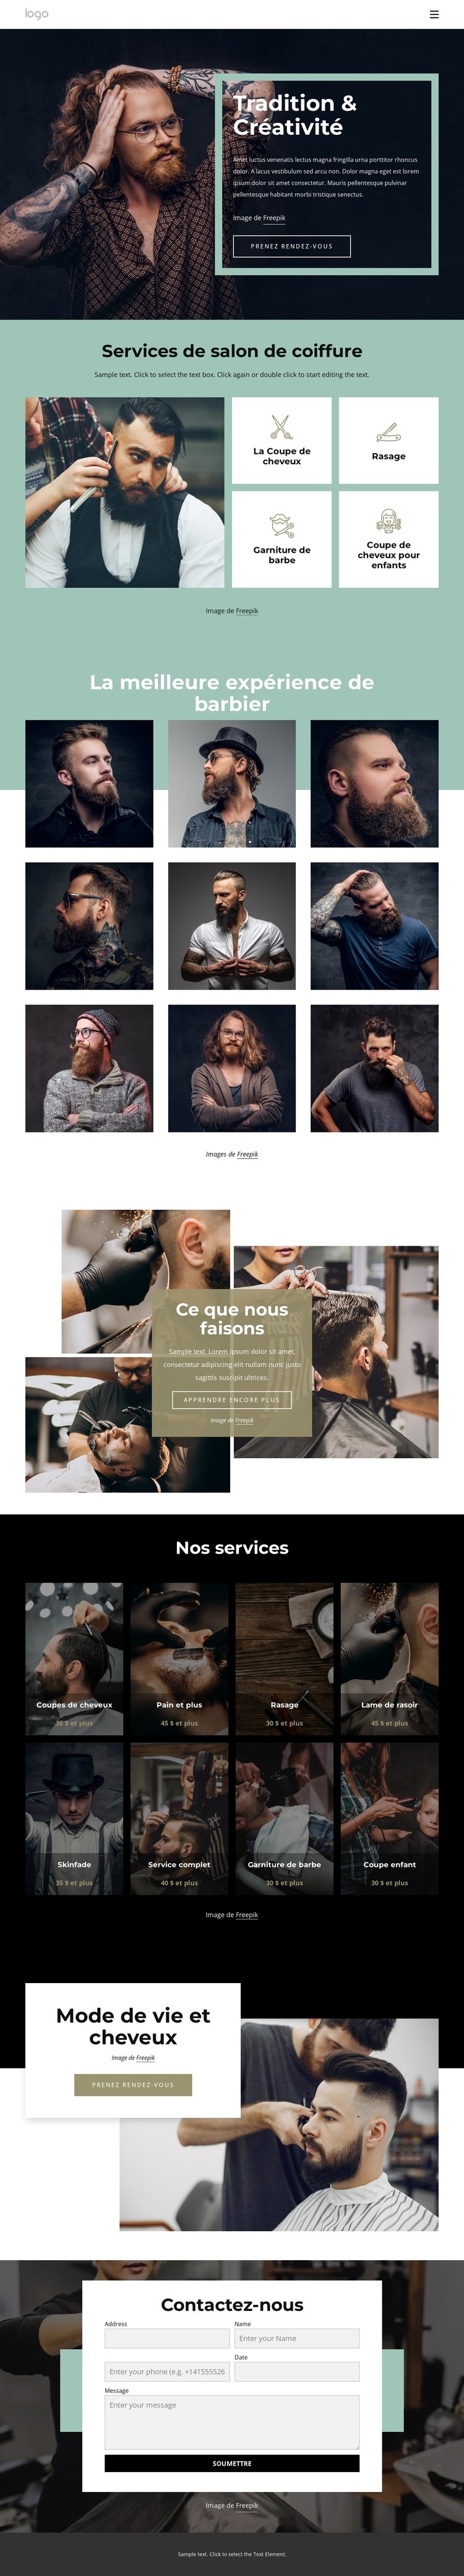 Salon de coiffure public Modèle HTML5